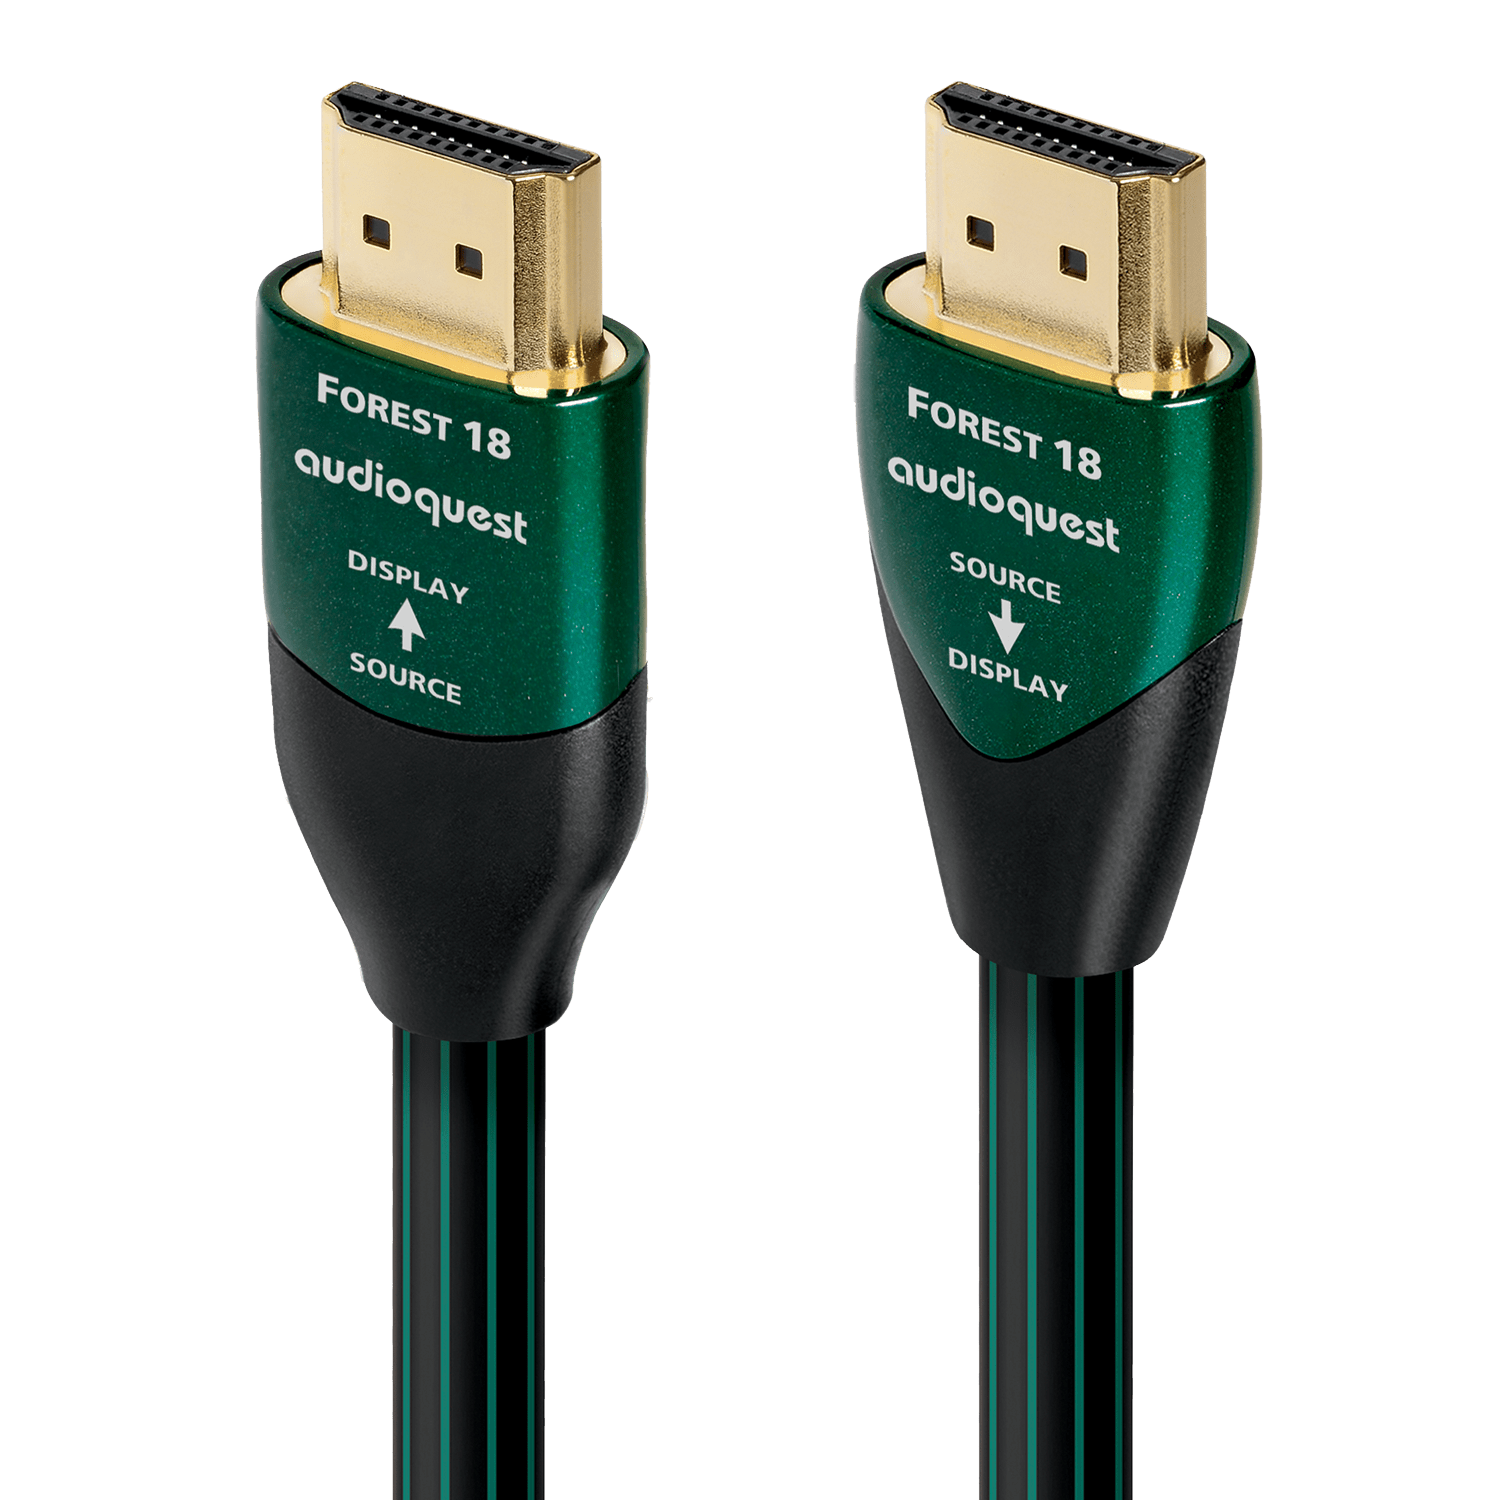 HDMI Cables – AudioQuest